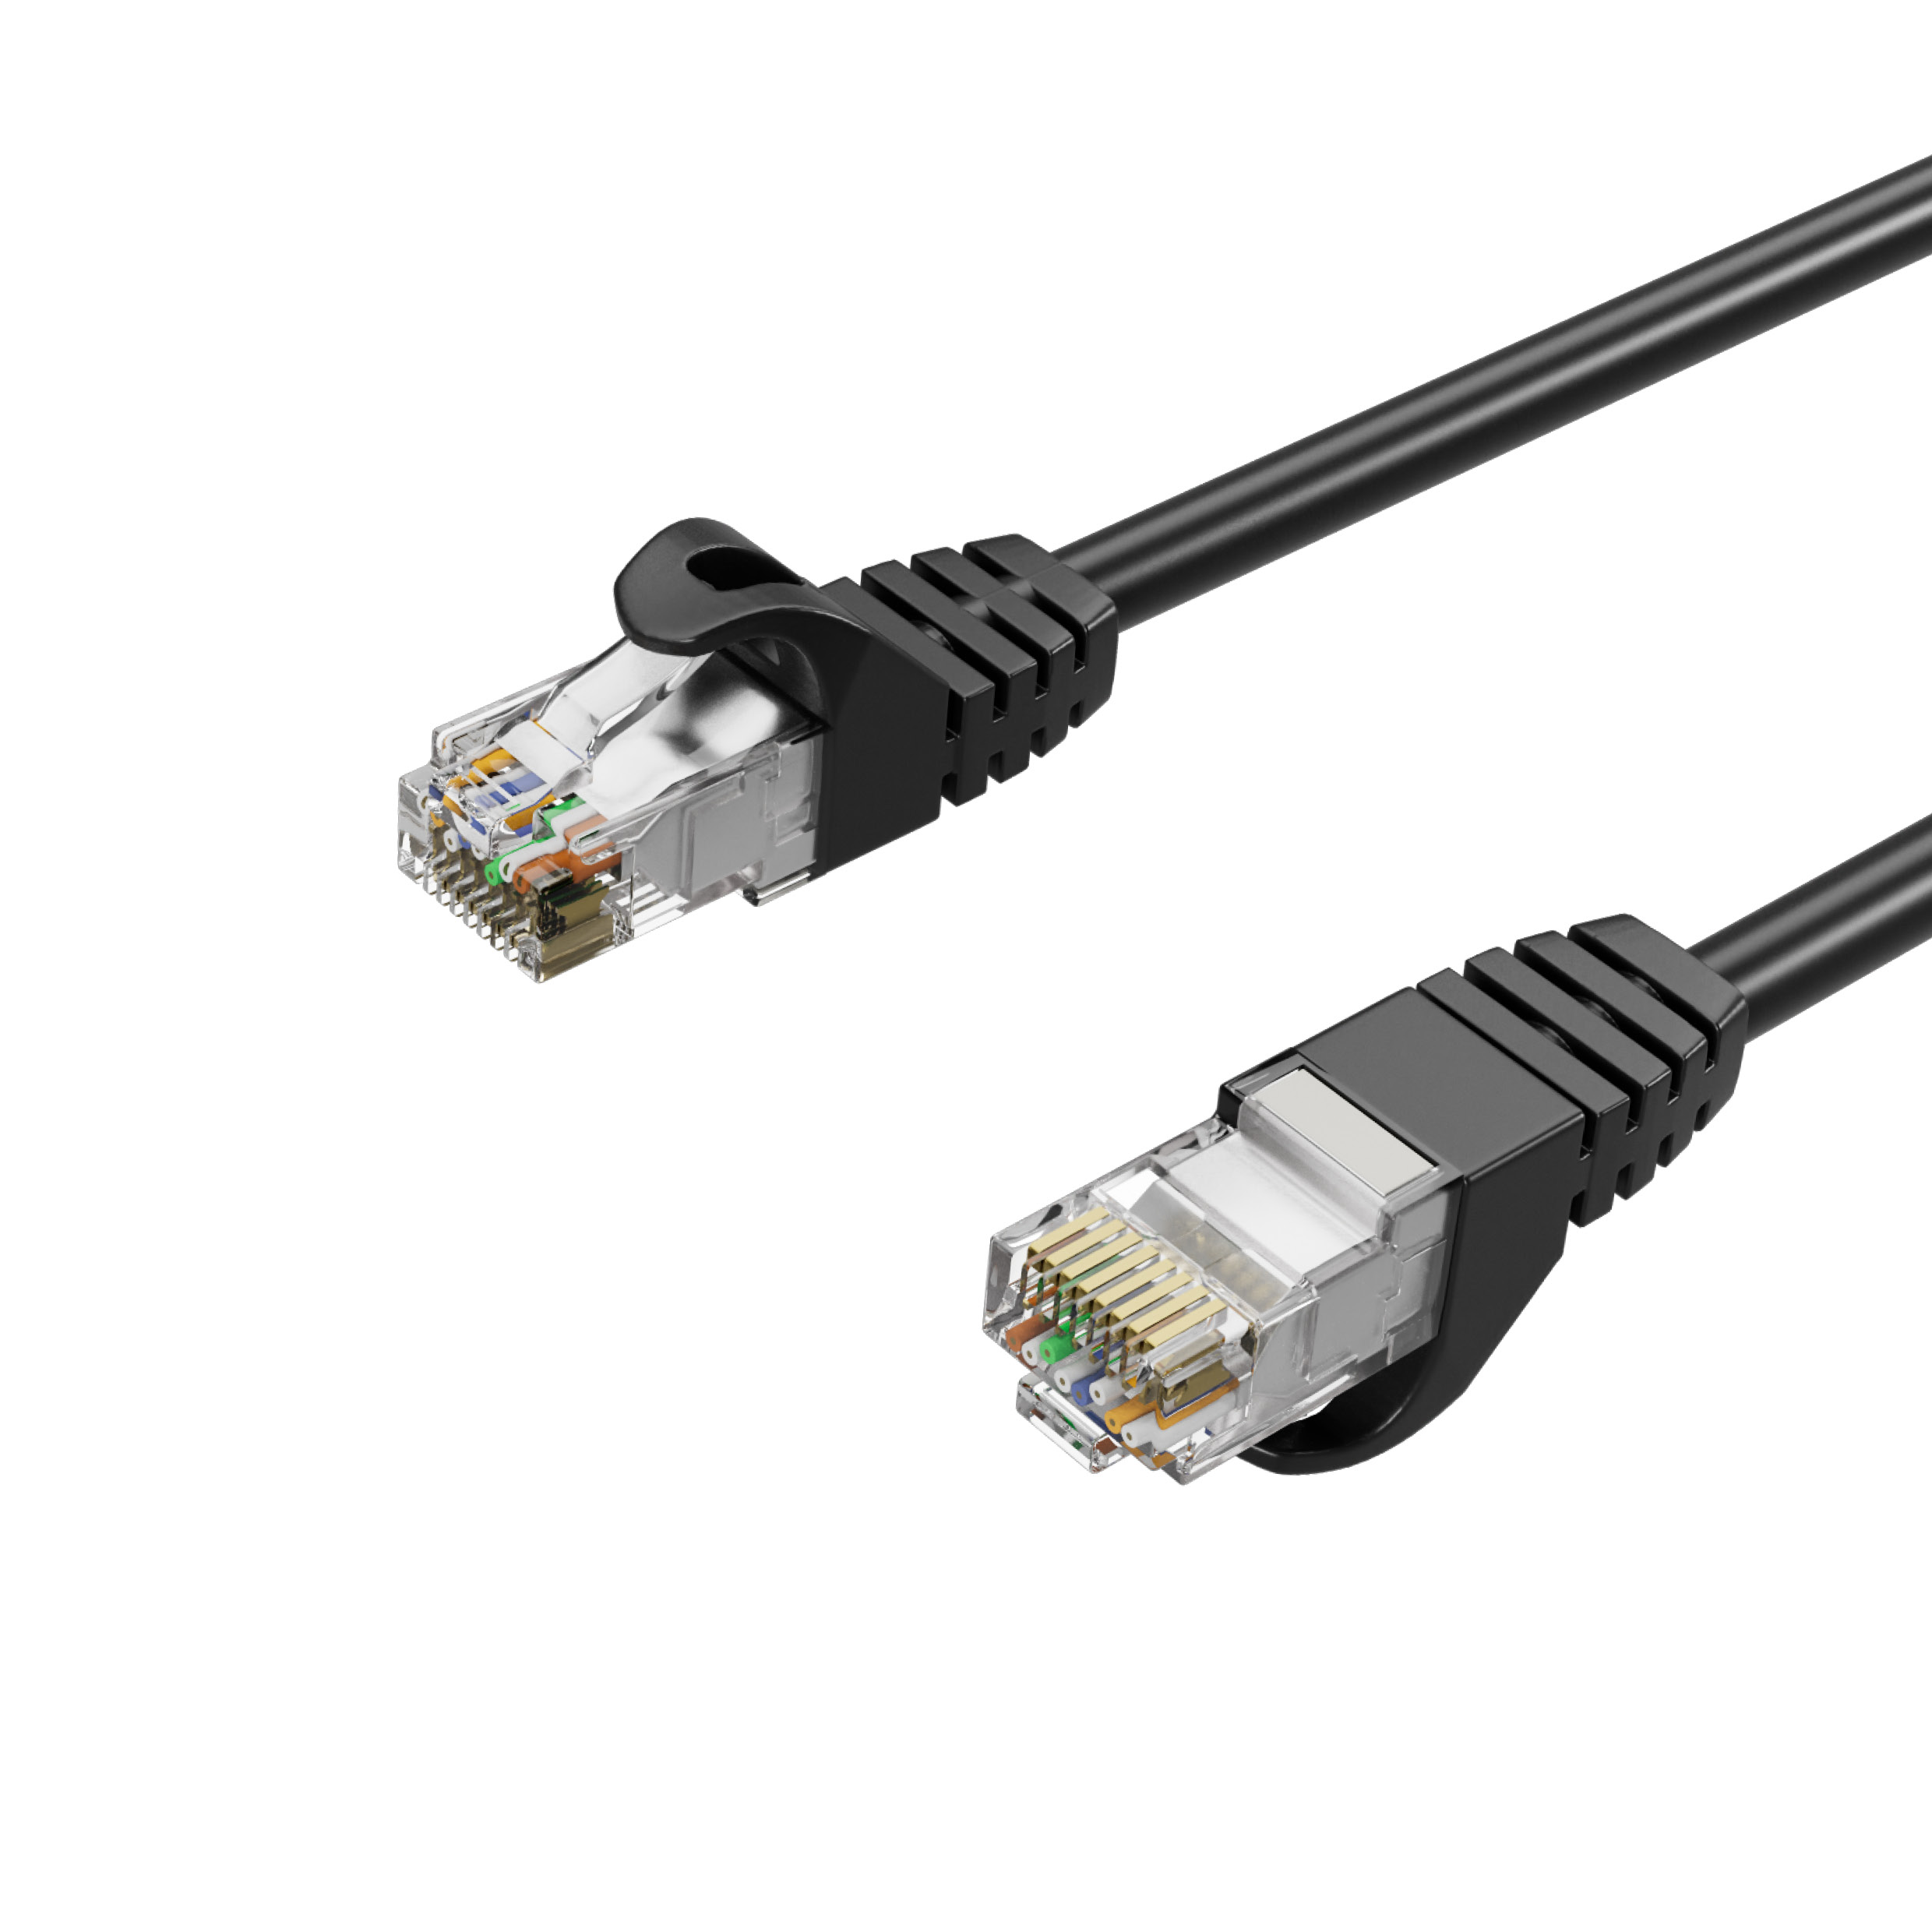 KABELBUDE Netzwerkkabel, Ethernet Kabel, Lan-Kabel m RJ45, 5 RJ45 Cat. U/UTP 5m 7 Patchkabel schwarz